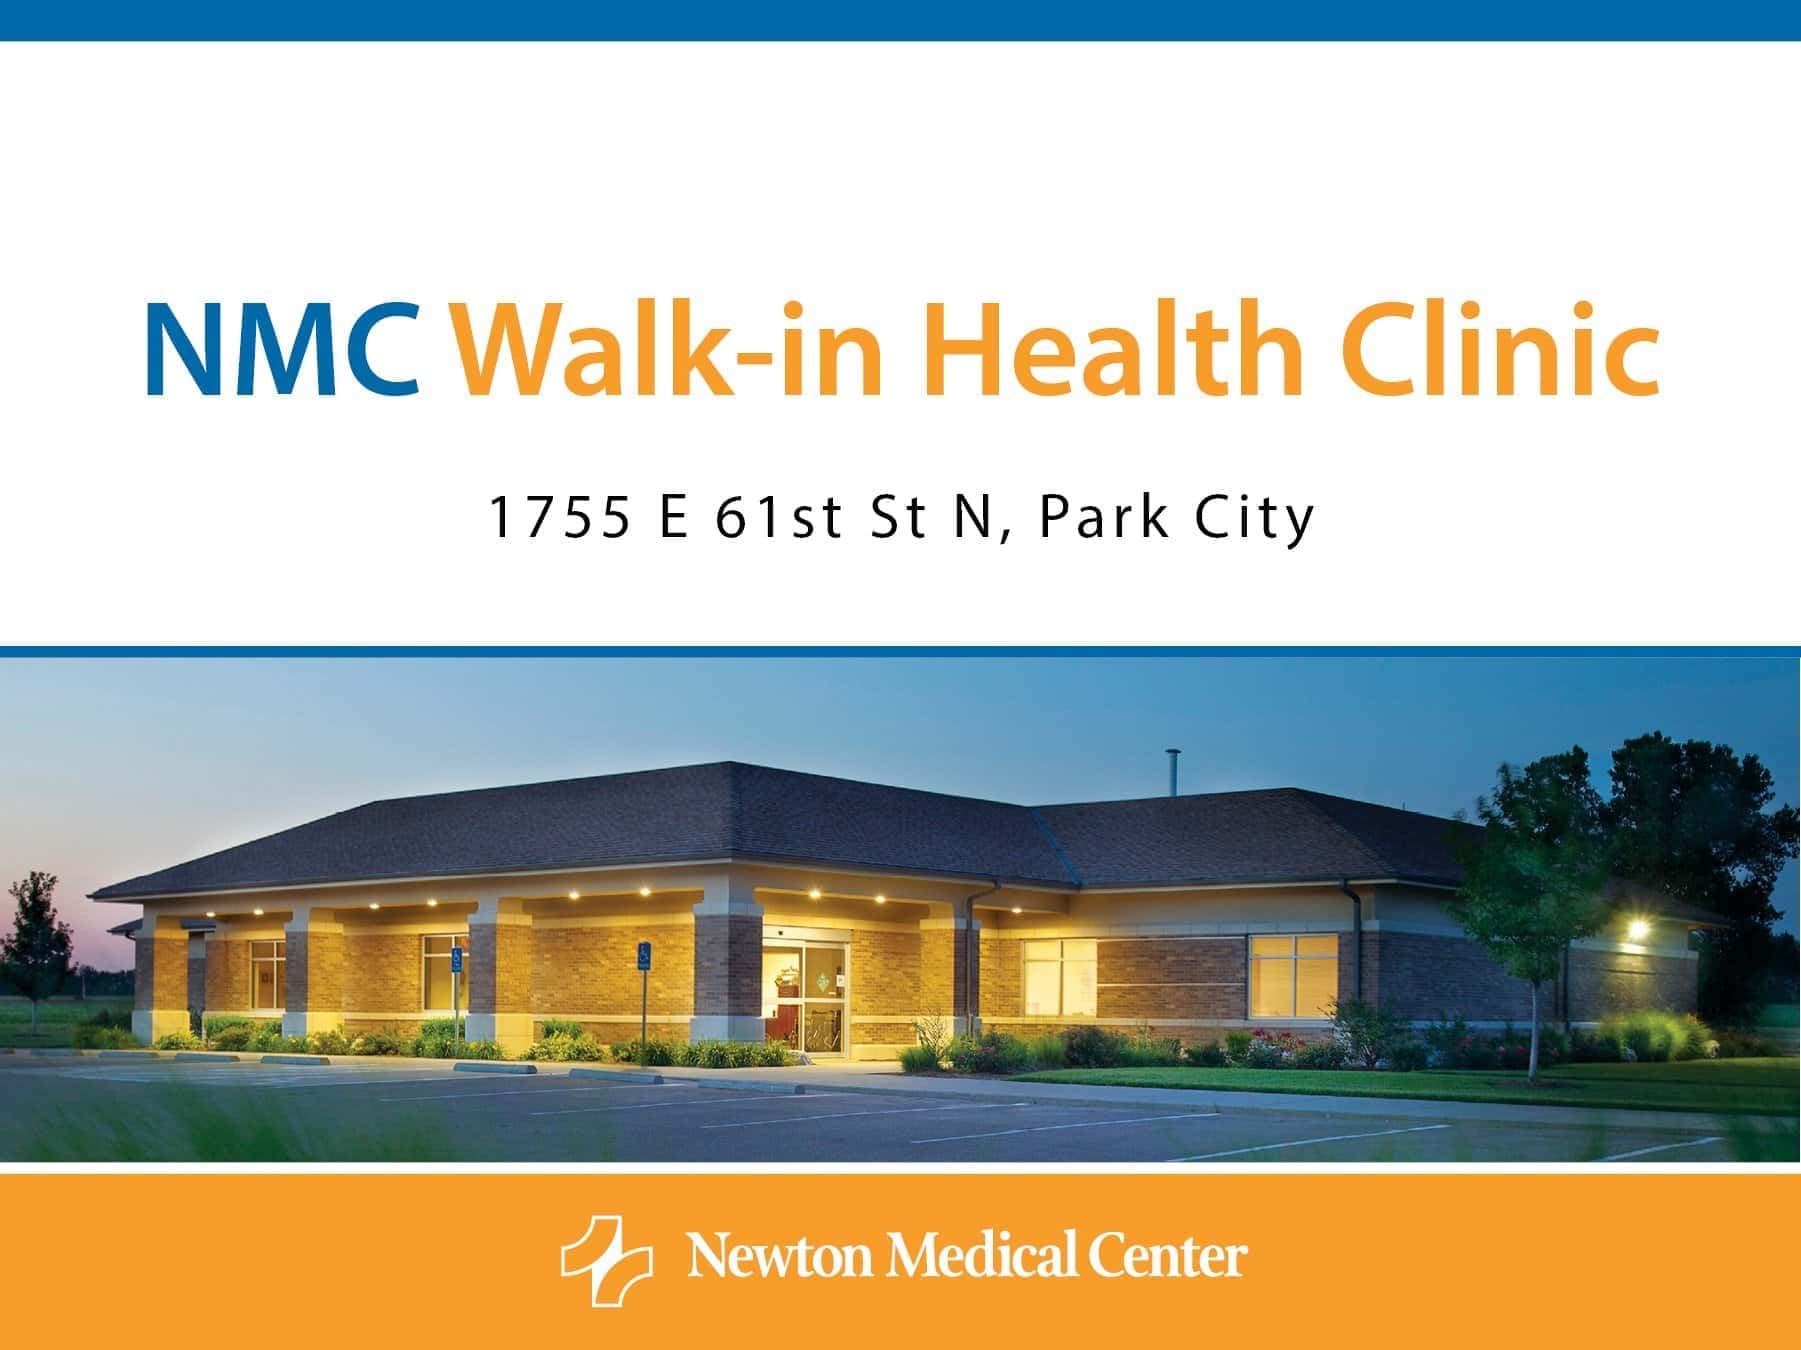 Walkin clinic opens in Park City KFDI 101.3